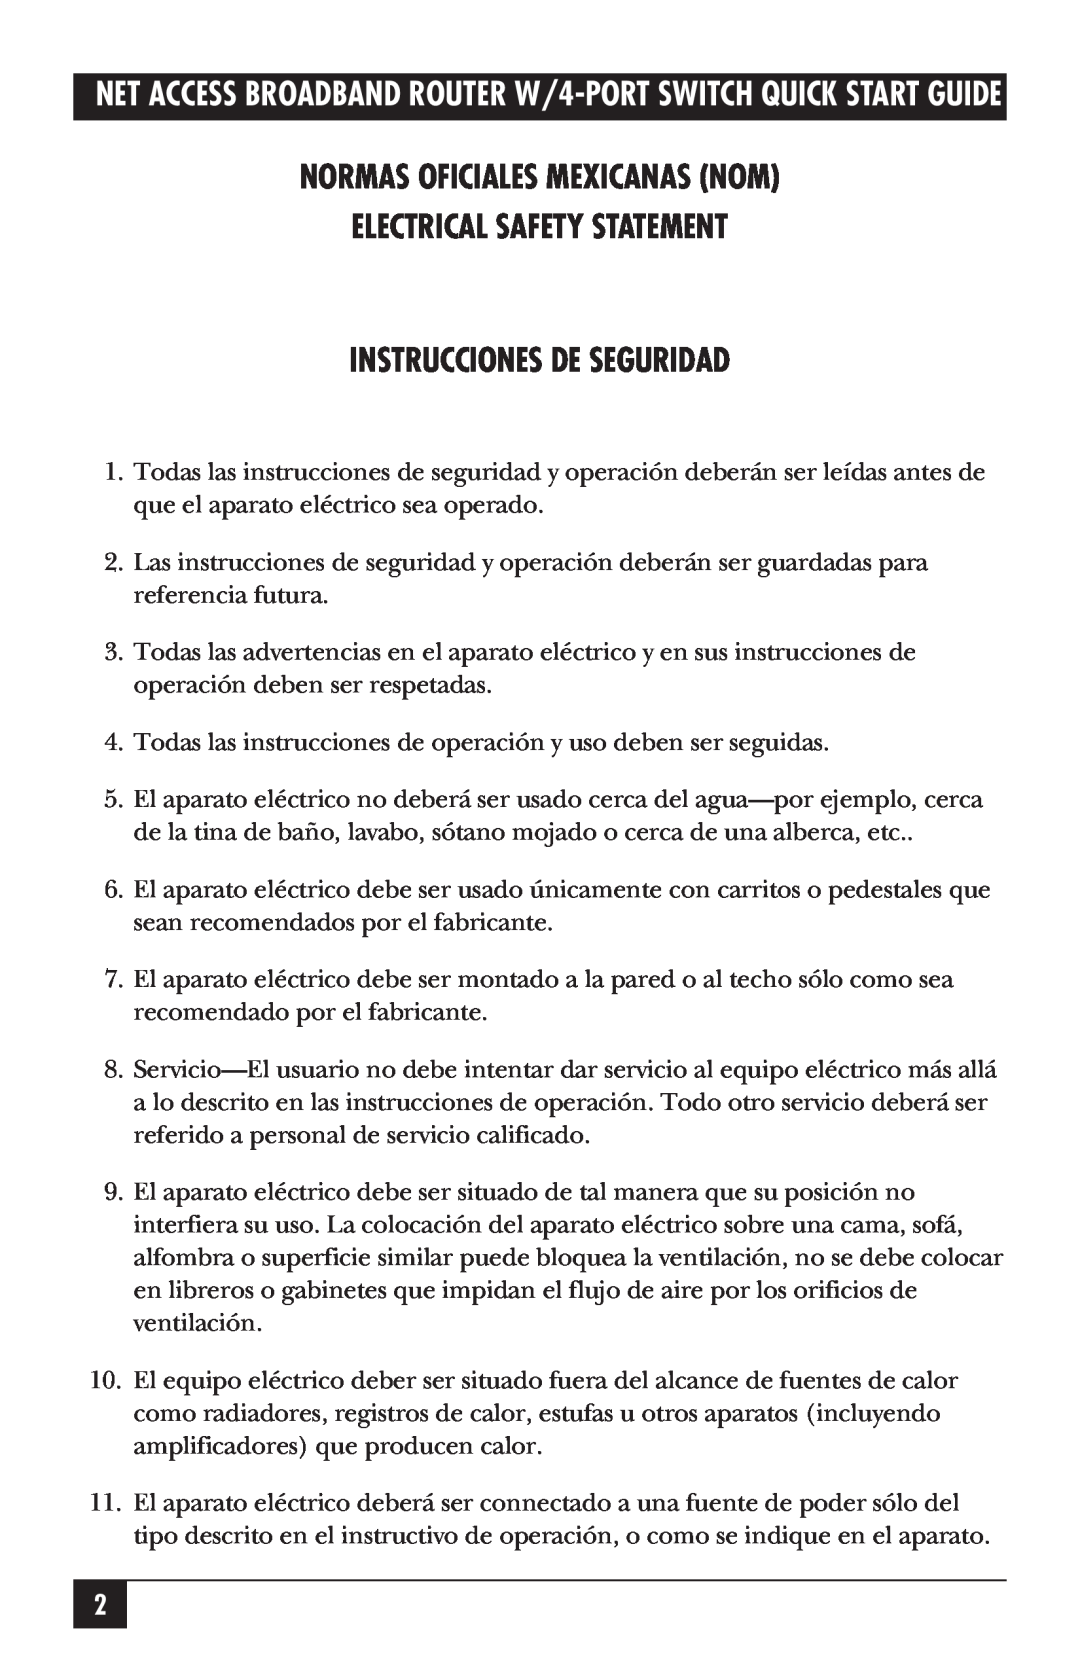 Black Box LRB500A quick start Normas Oficiales Mexicanas Nom Electrical Safety Statement, Instrucciones De Seguridad 